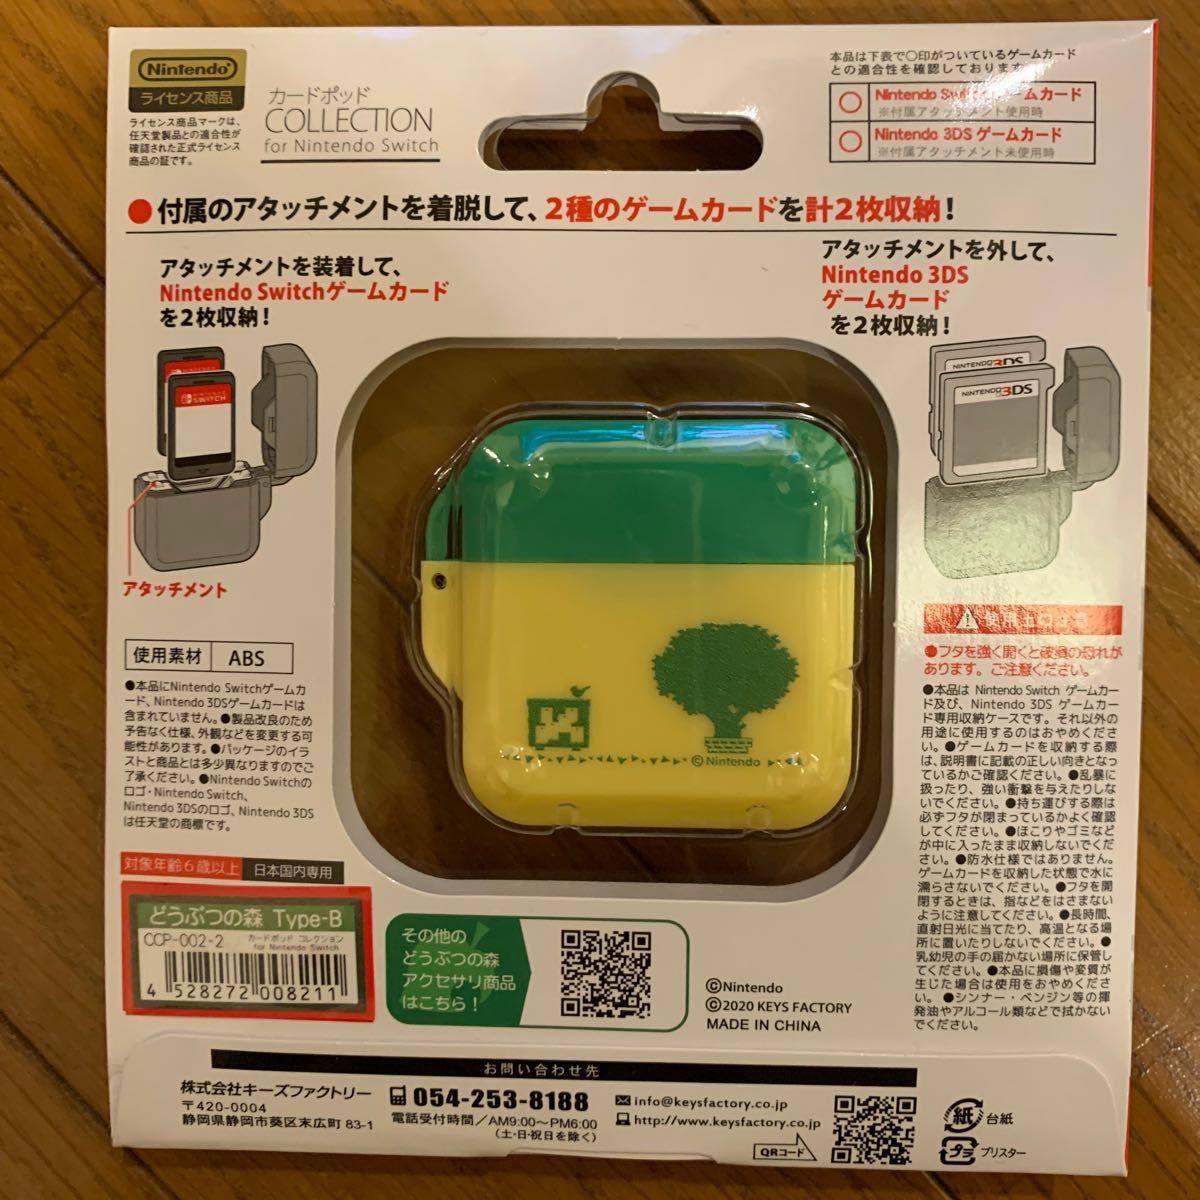 [任天堂ライセンス商品]CARD POD COLLECTION for Nintendo Switch(どうぶつの森)Type-B